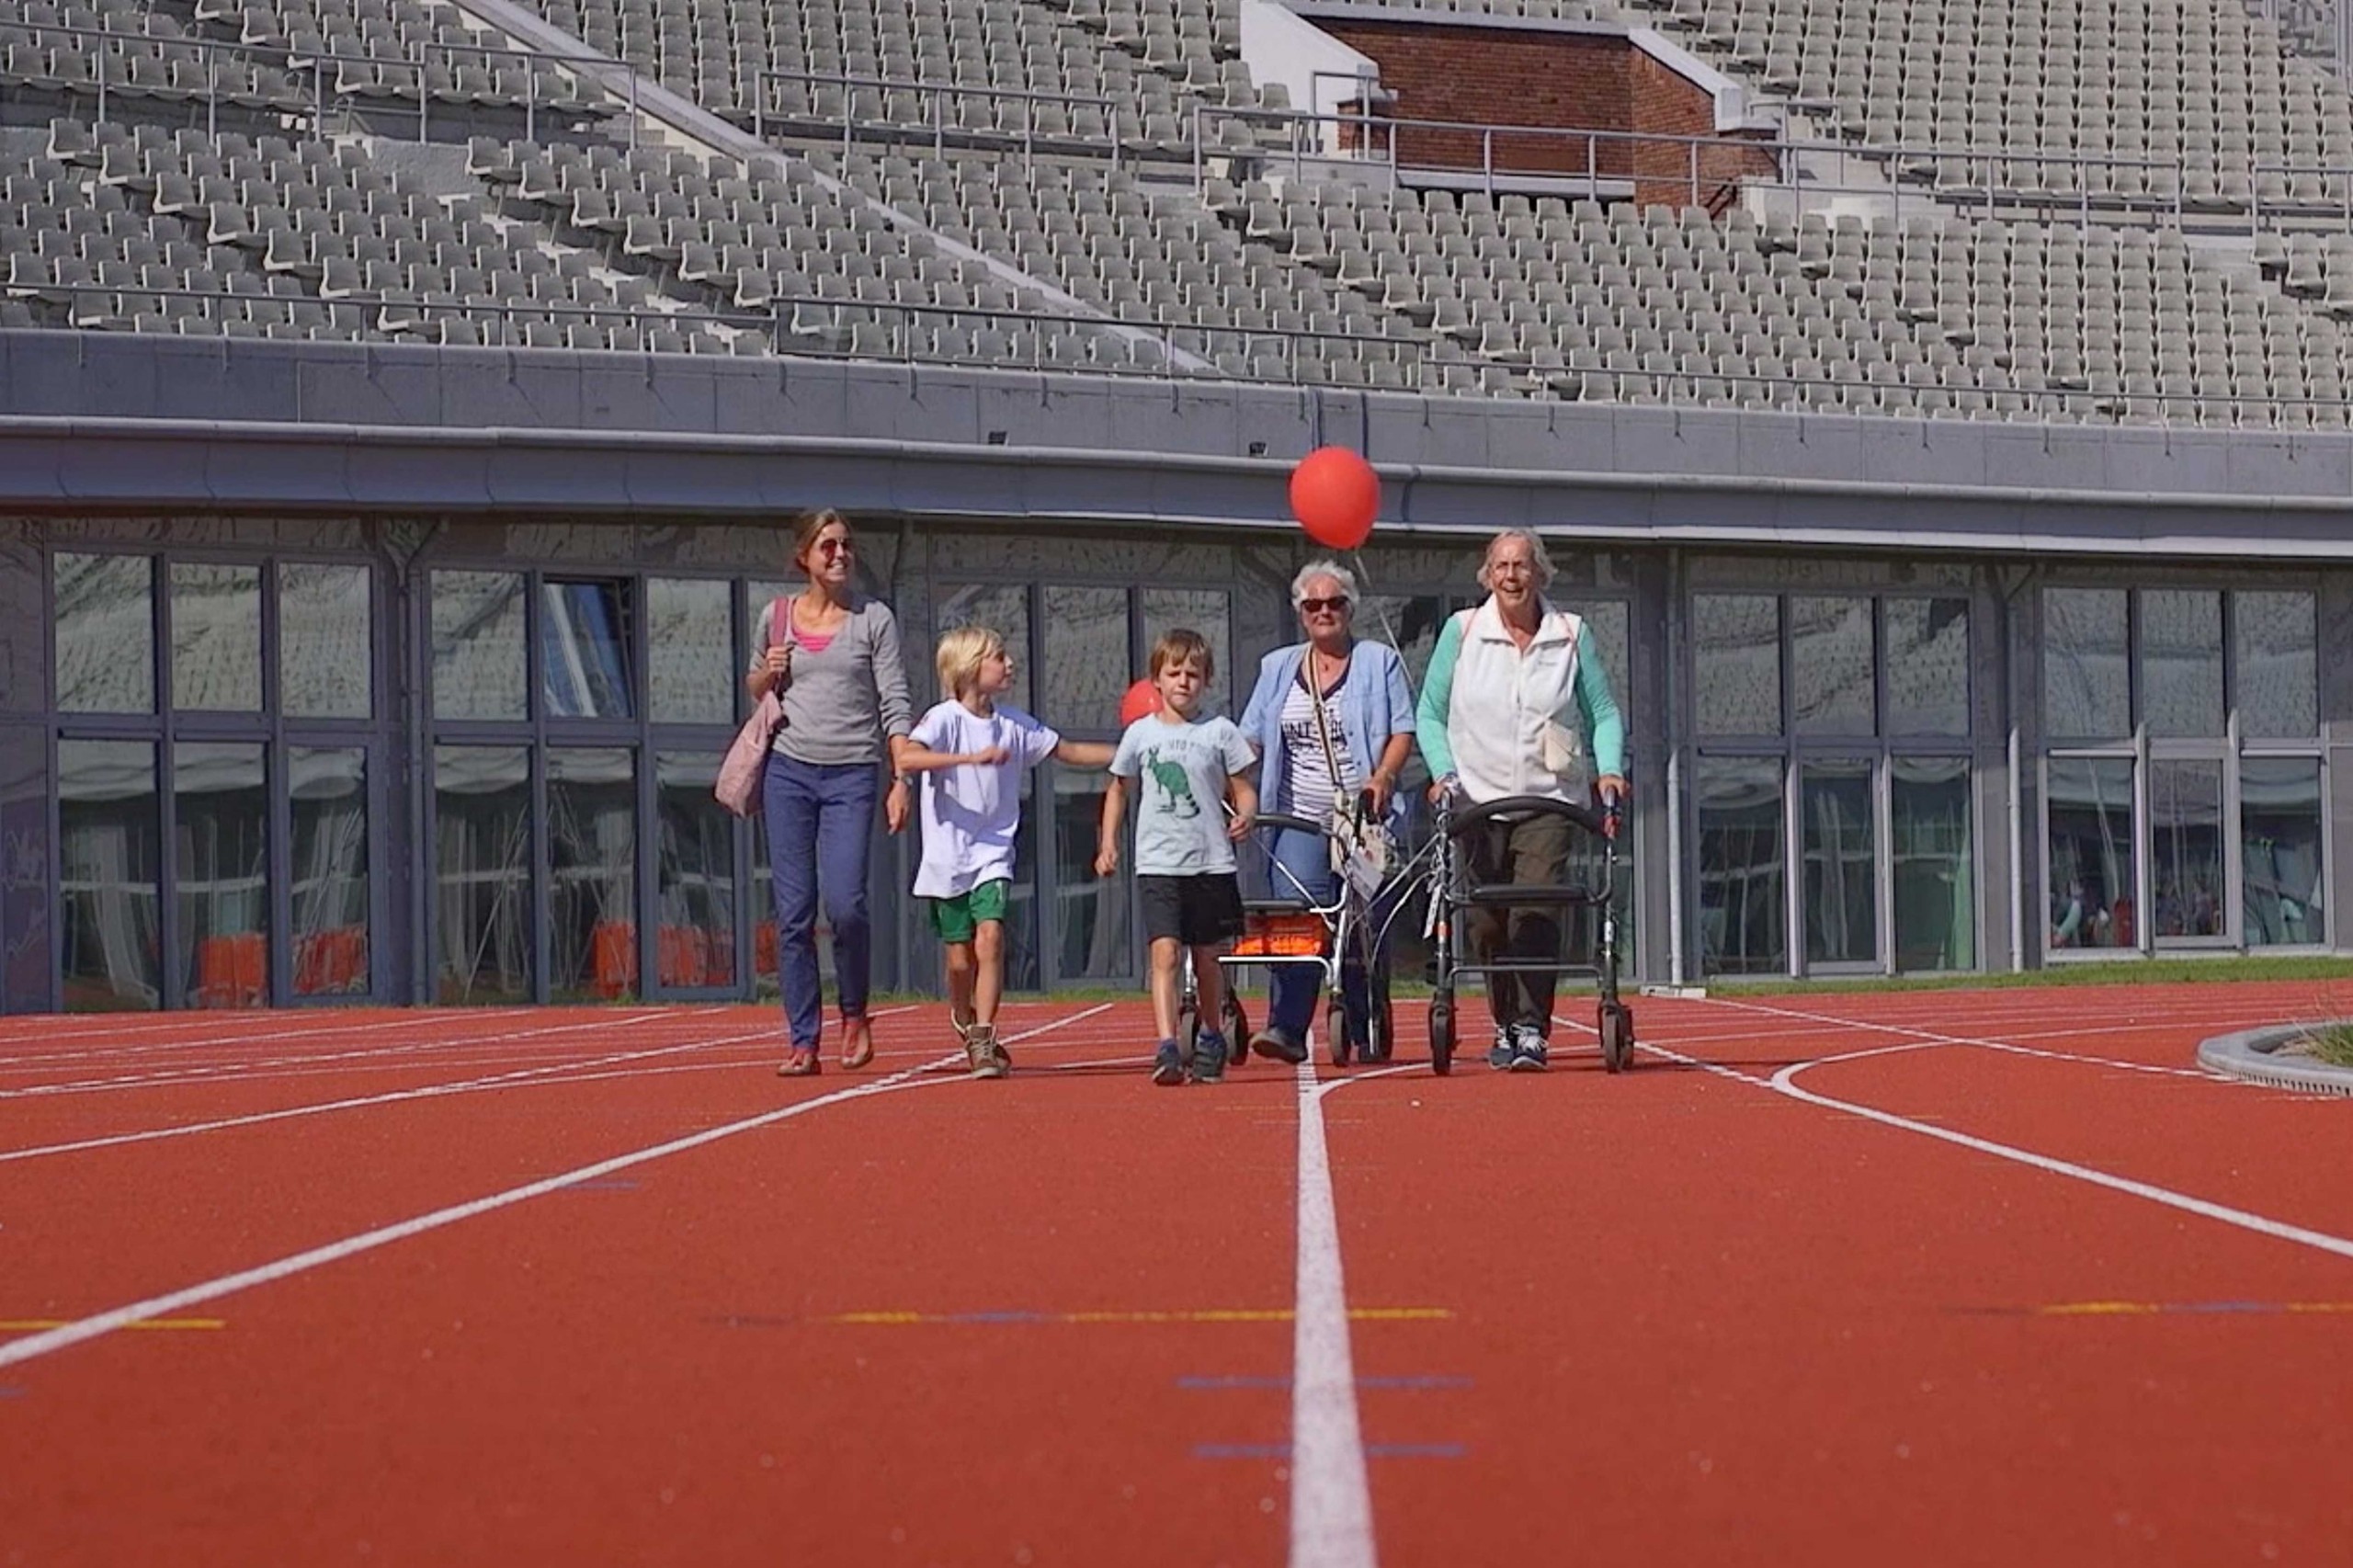 Rollatorloop 2015 in het Olympisch stadion: zelf op de renbaan lopen!